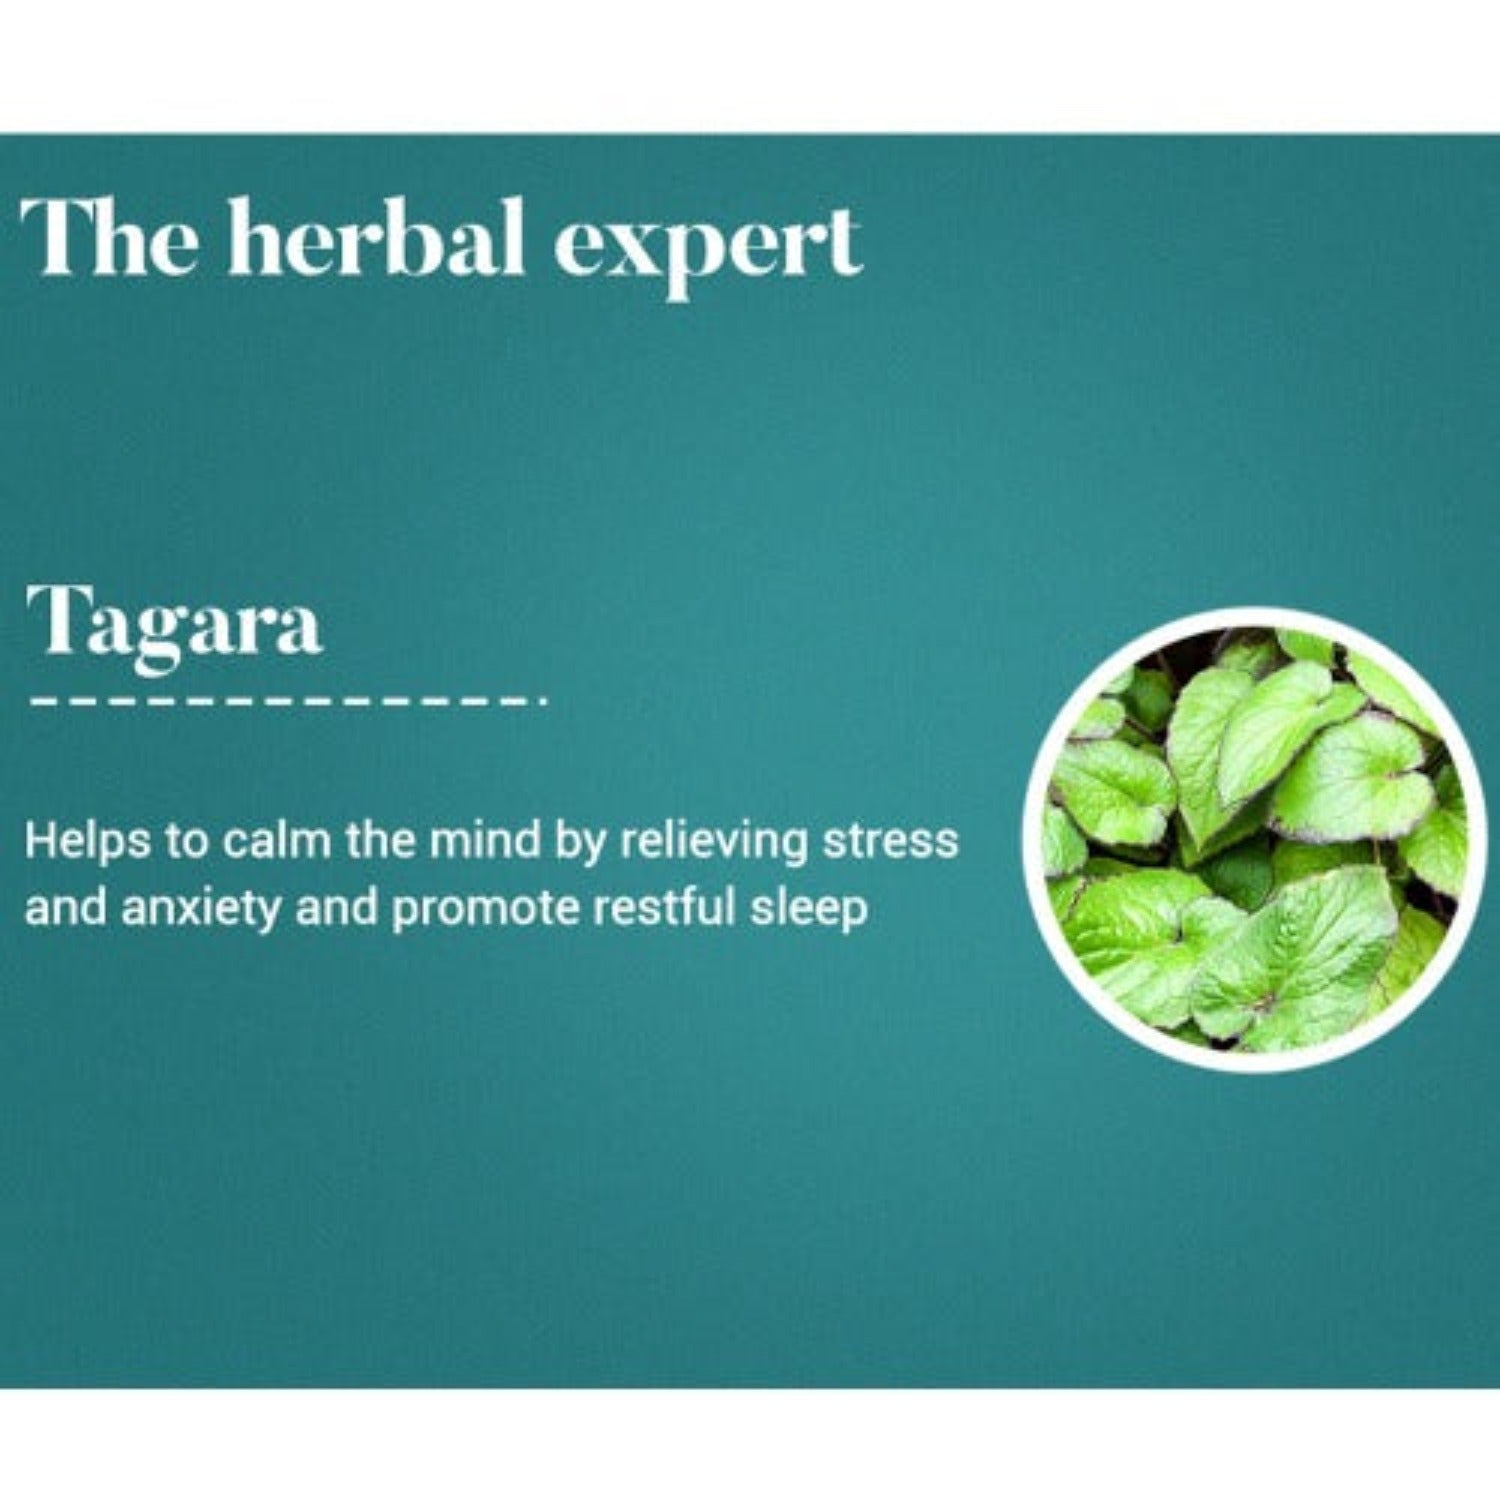 Himalaya Pure Herbs Sleep Wellness Herbal Ayurvedic Tagara Promotes Restful Sleep 60 Tablets